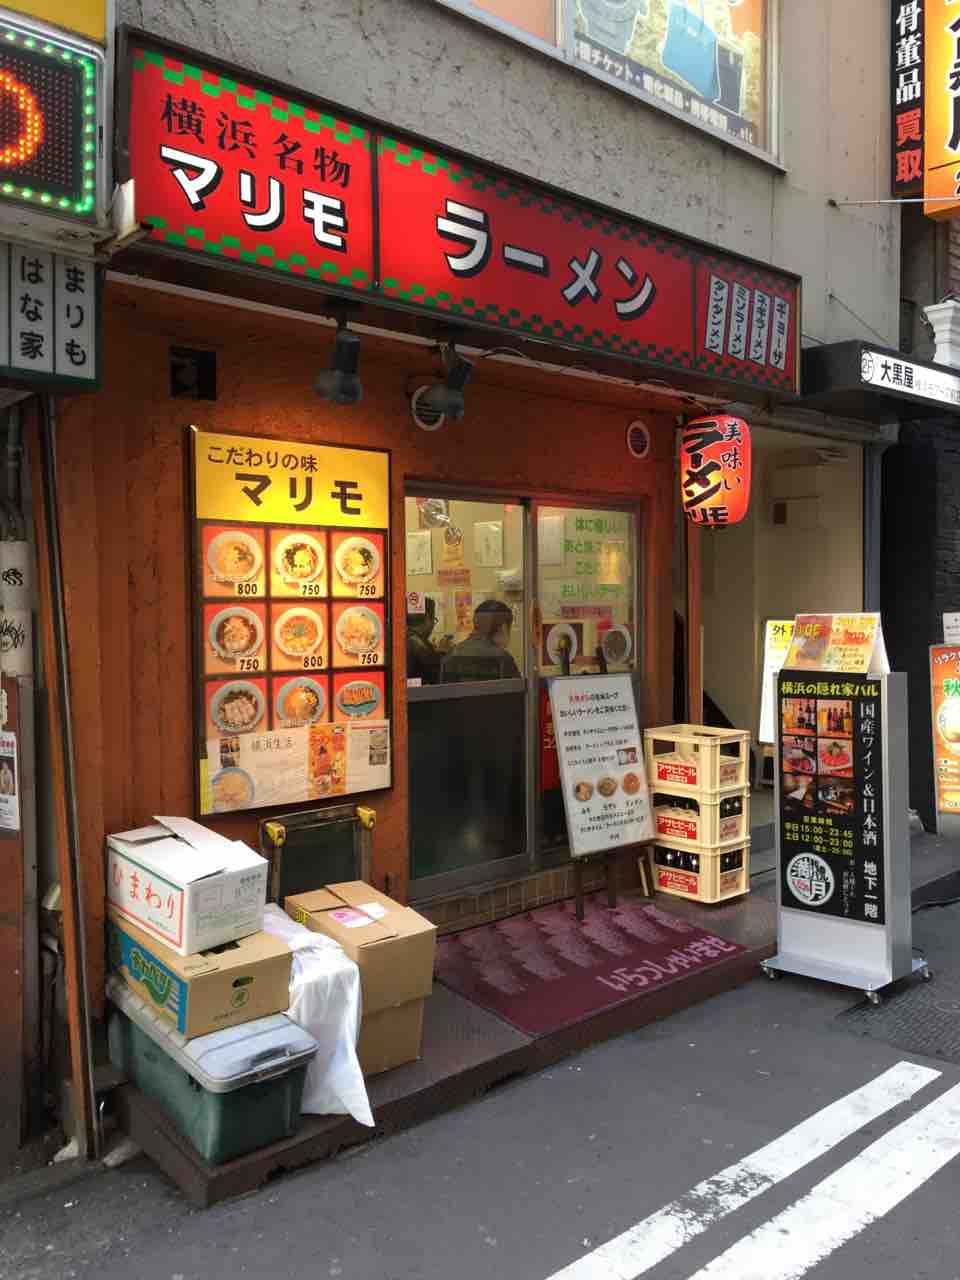 味噌バターラーメン Of マリモ 横浜駅 左馬允 さまのすけ の日々是麺道楽 ひびこれめんどうらく